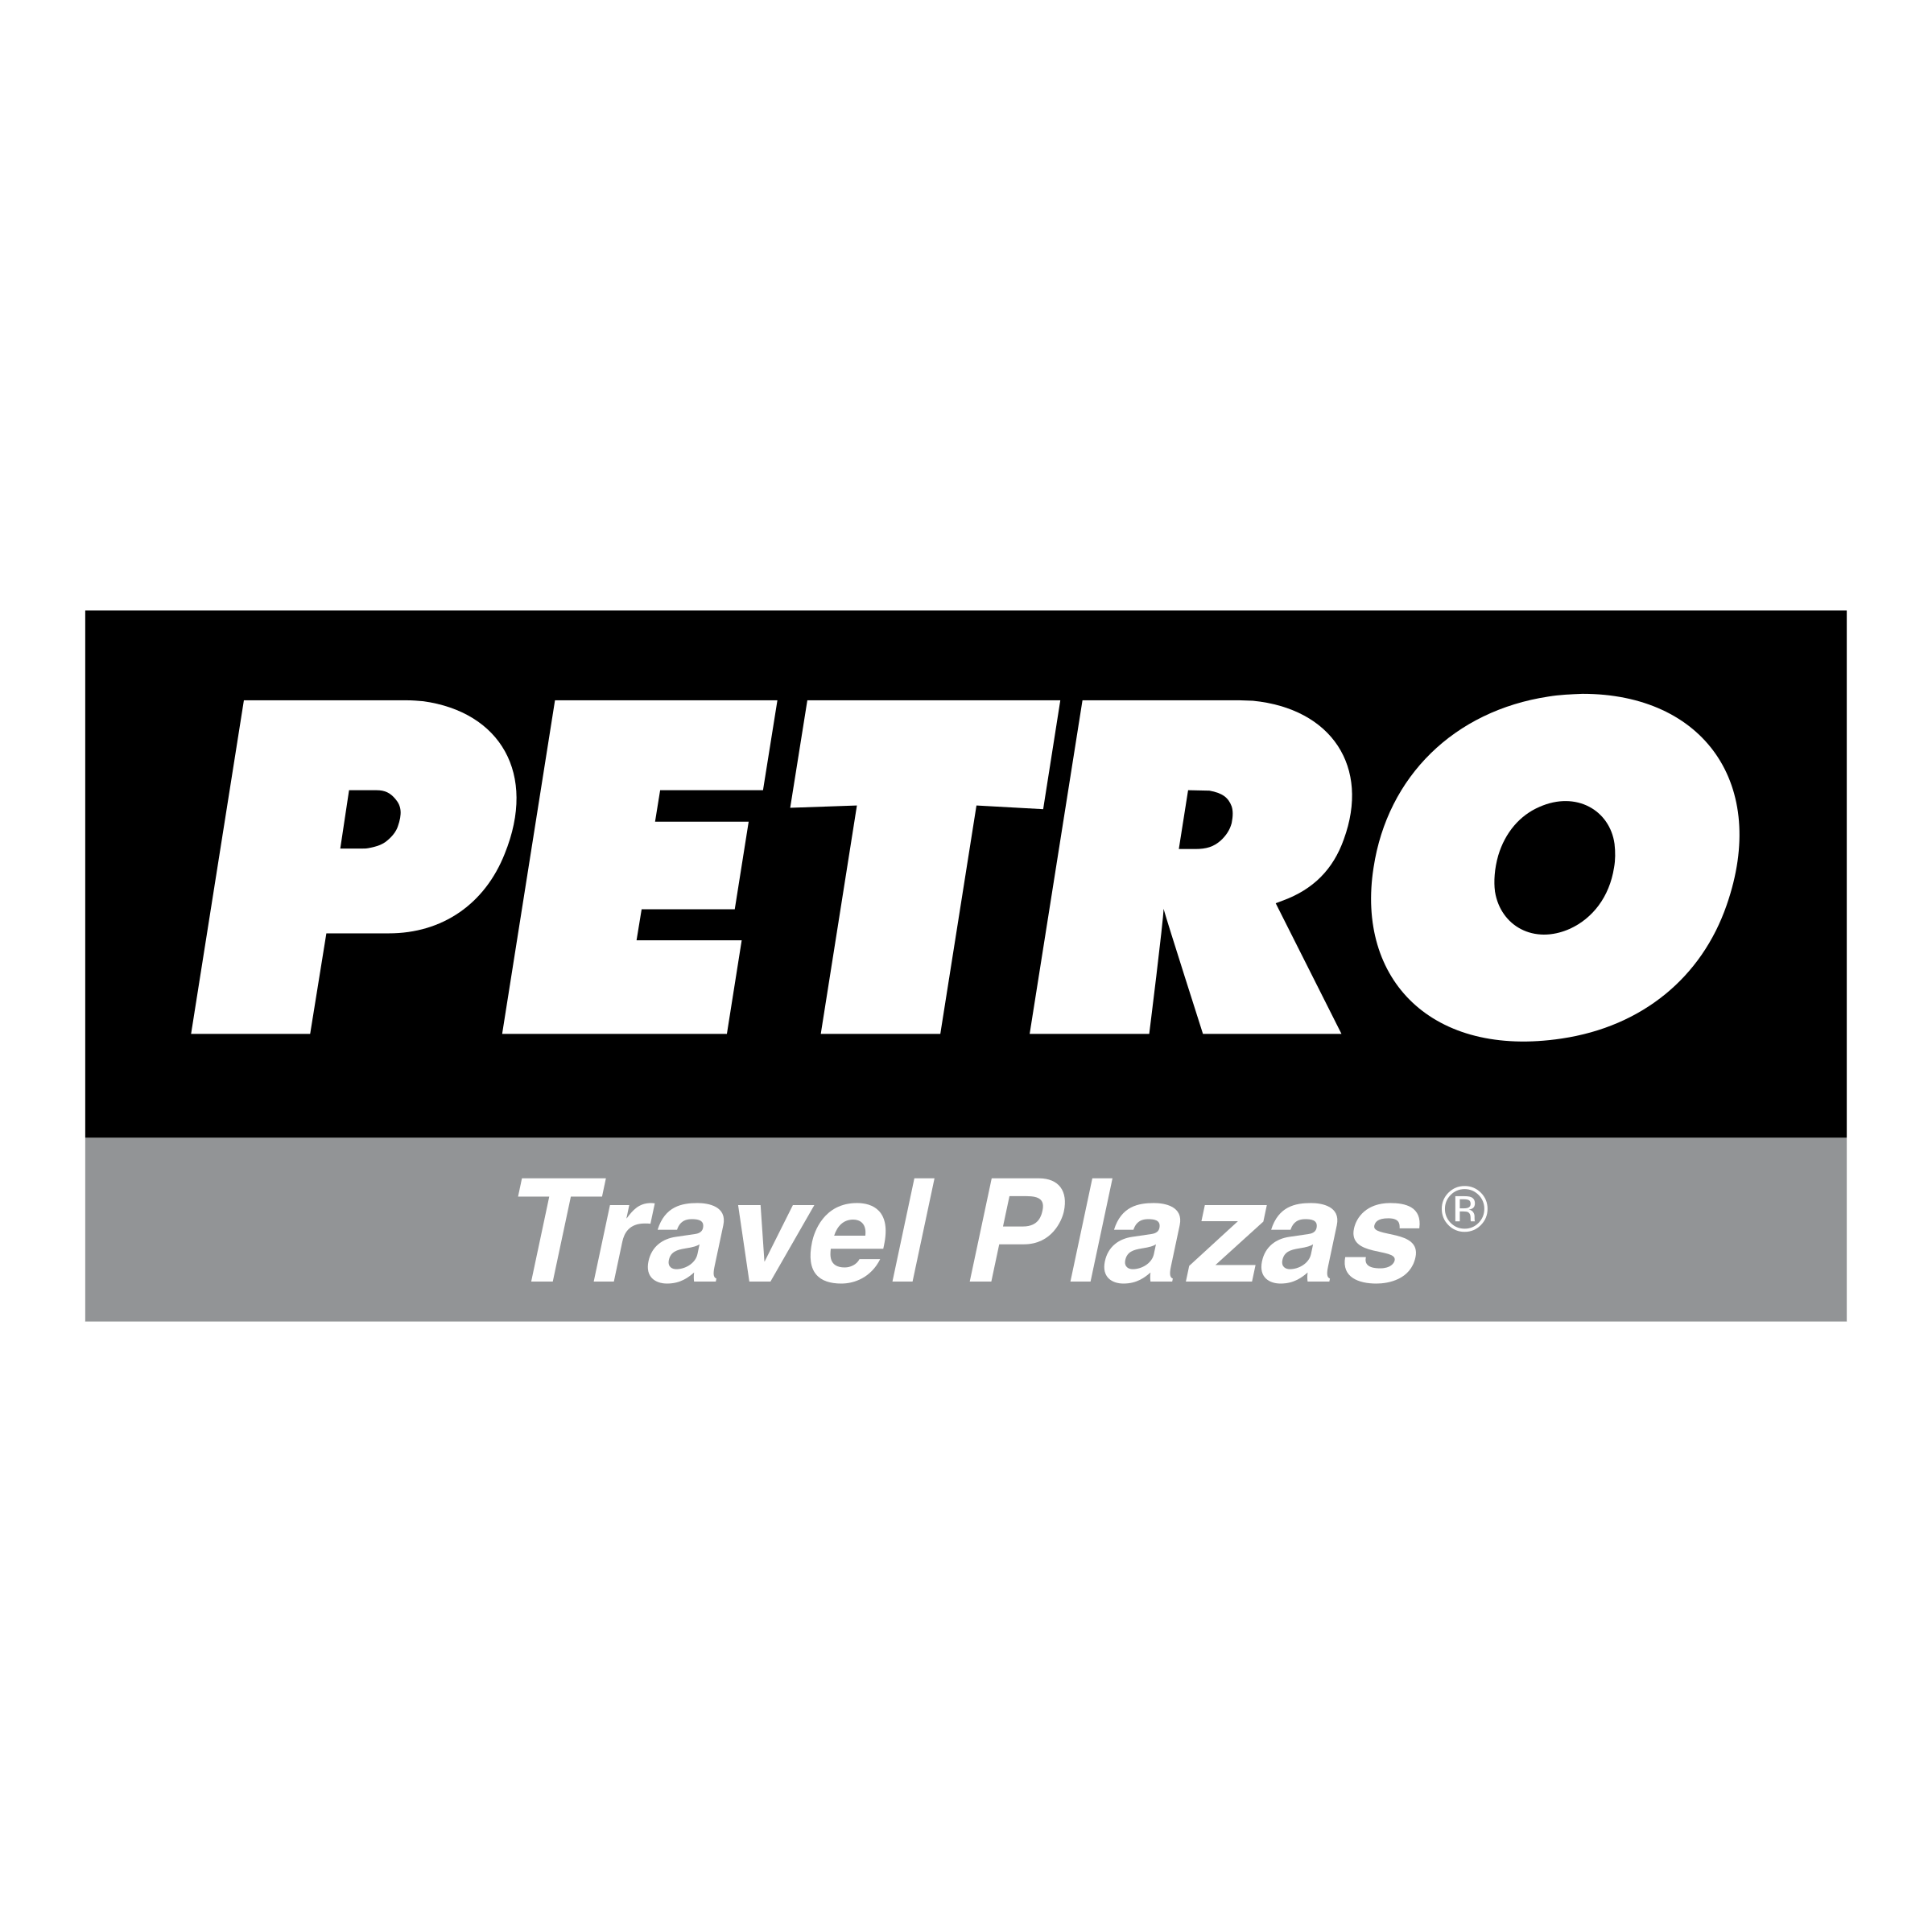 Petro Logo - Petro Logo PNG Transparent & SVG Vector - Freebie Supply